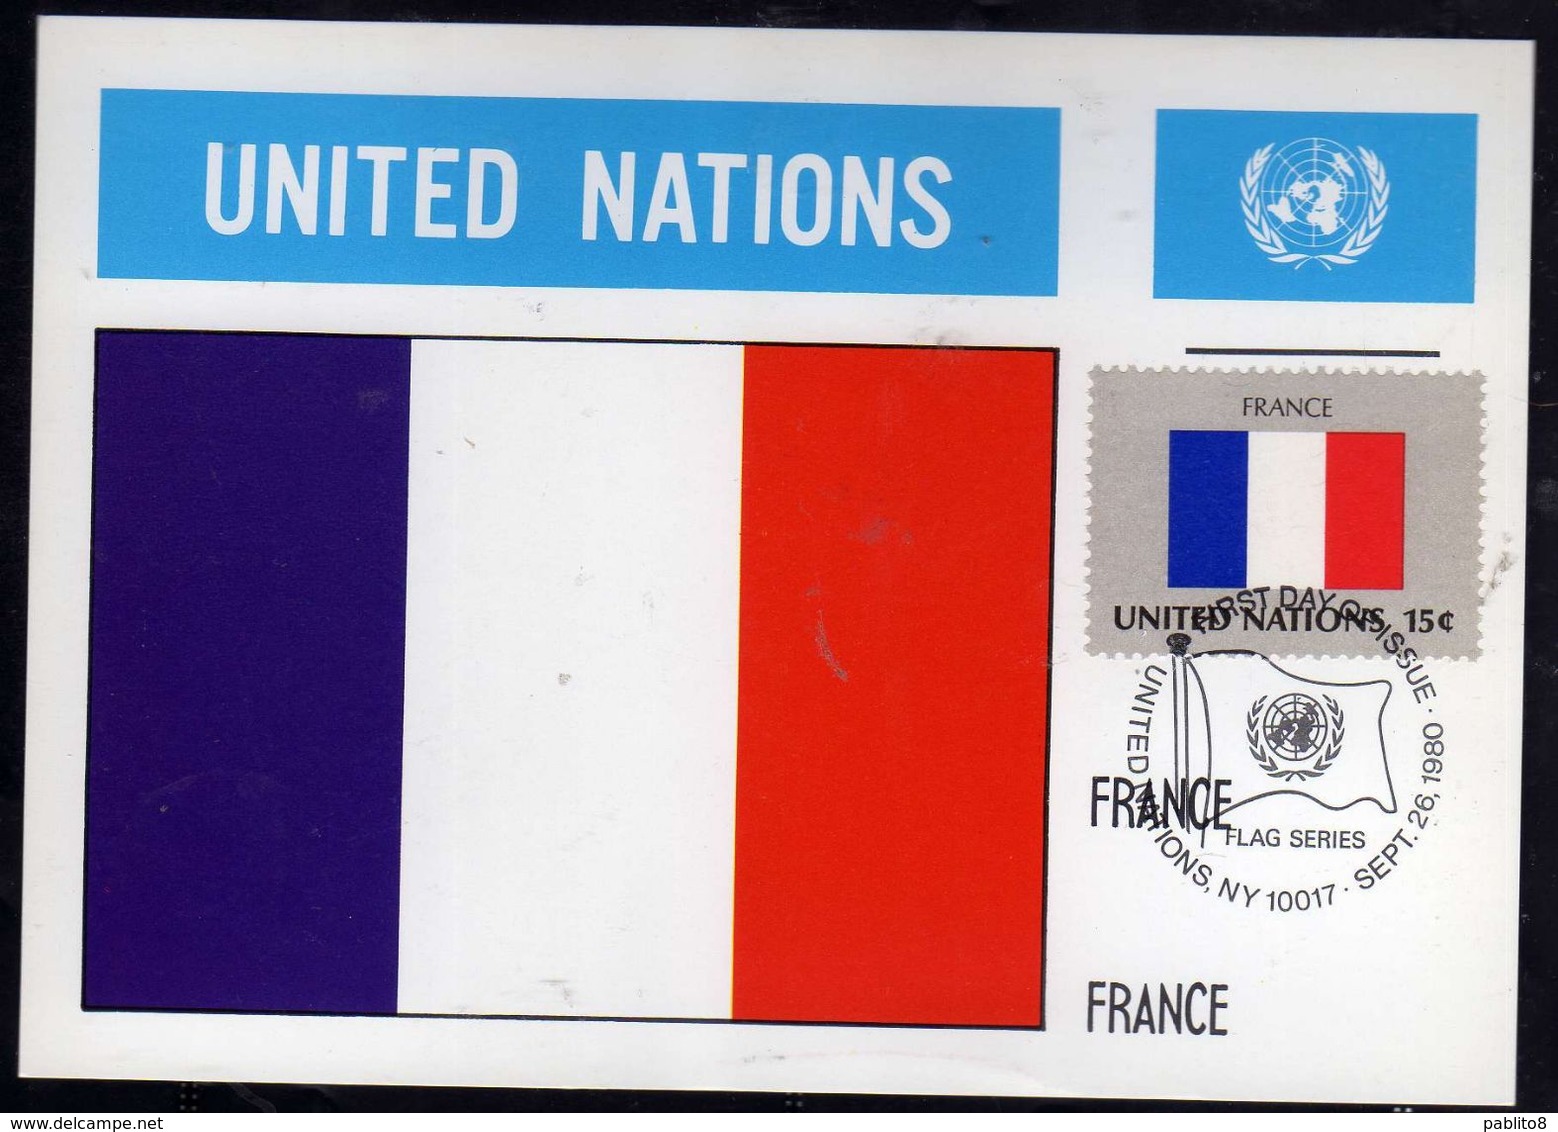 UNITED NATIONS NEW YORK ONU UN UNO 26 9 1980 FLAGS FRANCE FRANCIA FDC MAXI CARD CARTOLINA MAXIMUM - Tarjetas – Máxima